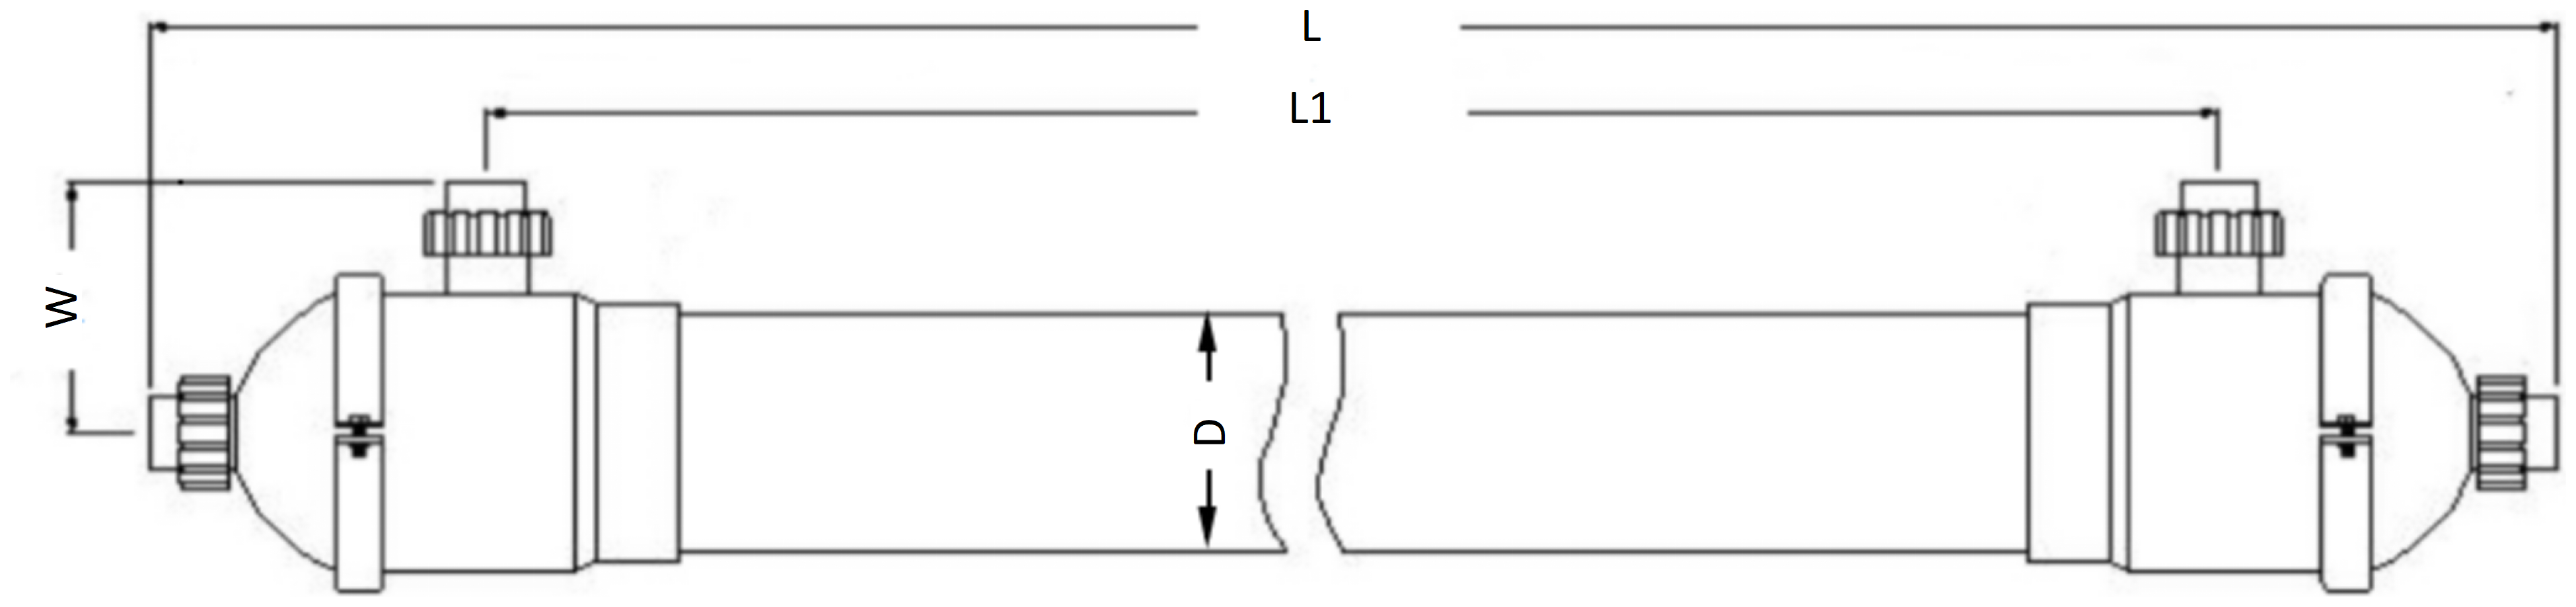 Dimensions of Hollow Fiber Membrane Contactors